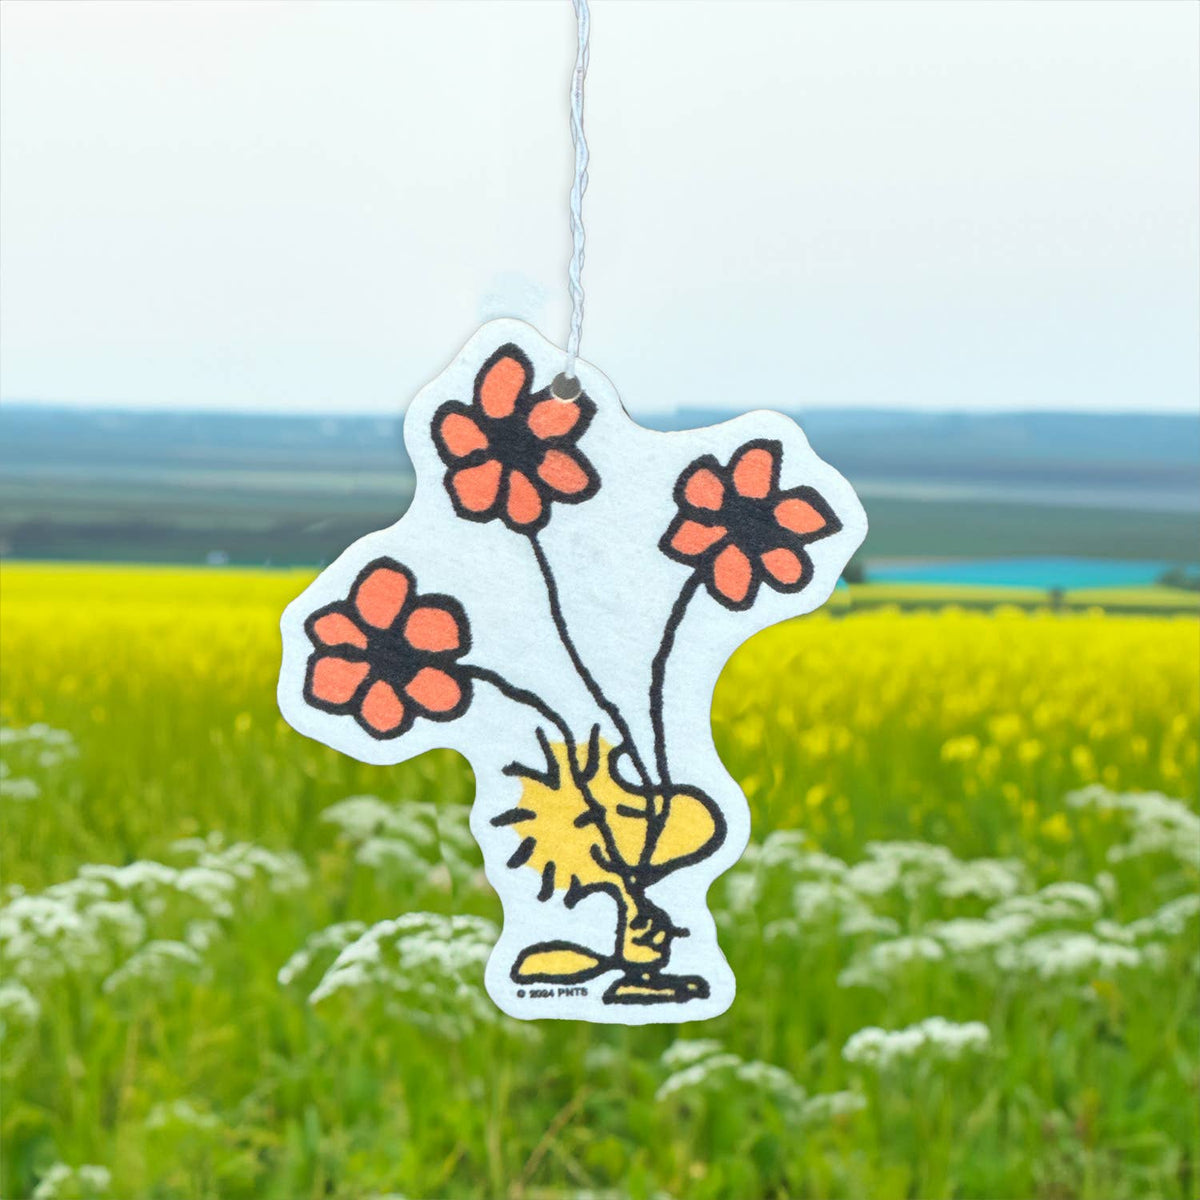 3P4 x Peanuts® - Woodstock Flower Air Freshener